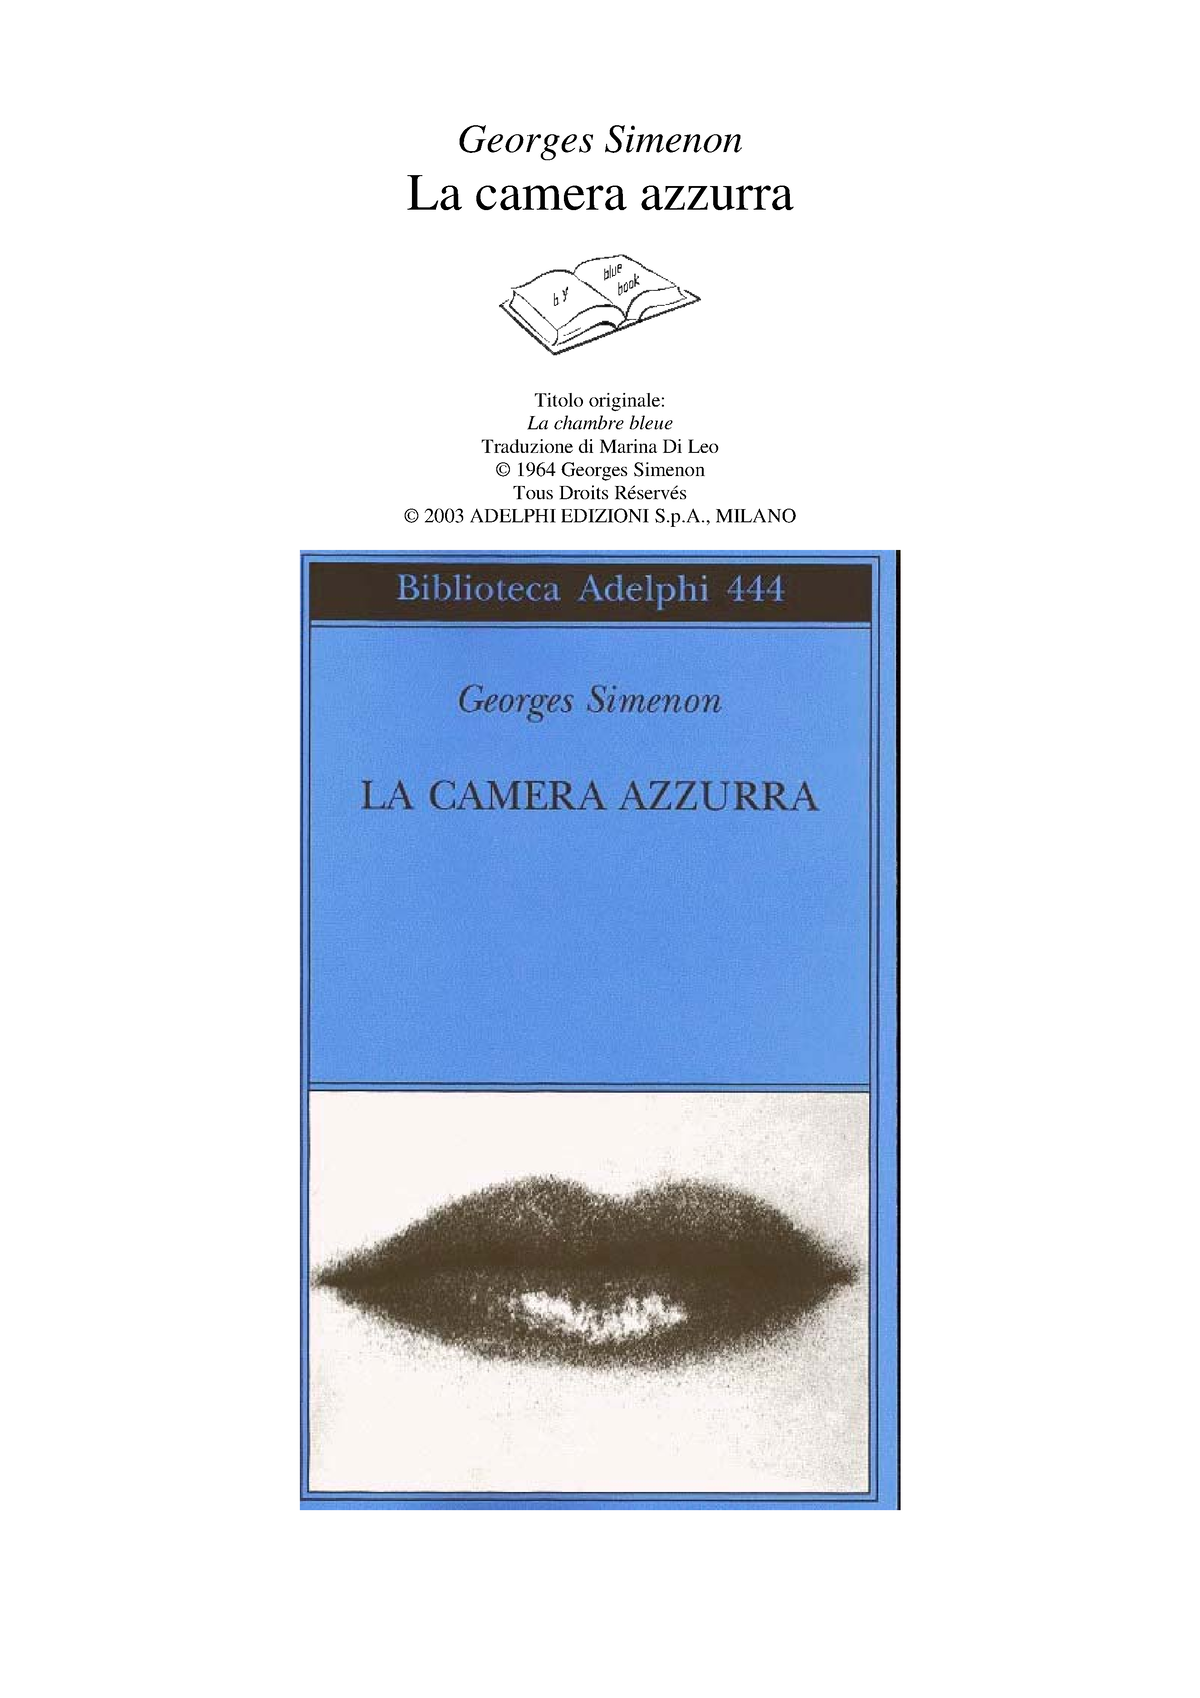 Georges Simenon - La Camera Azzurra (Ita Libro) - Georges Simenon La camera  azzurra Titolo - Studocu